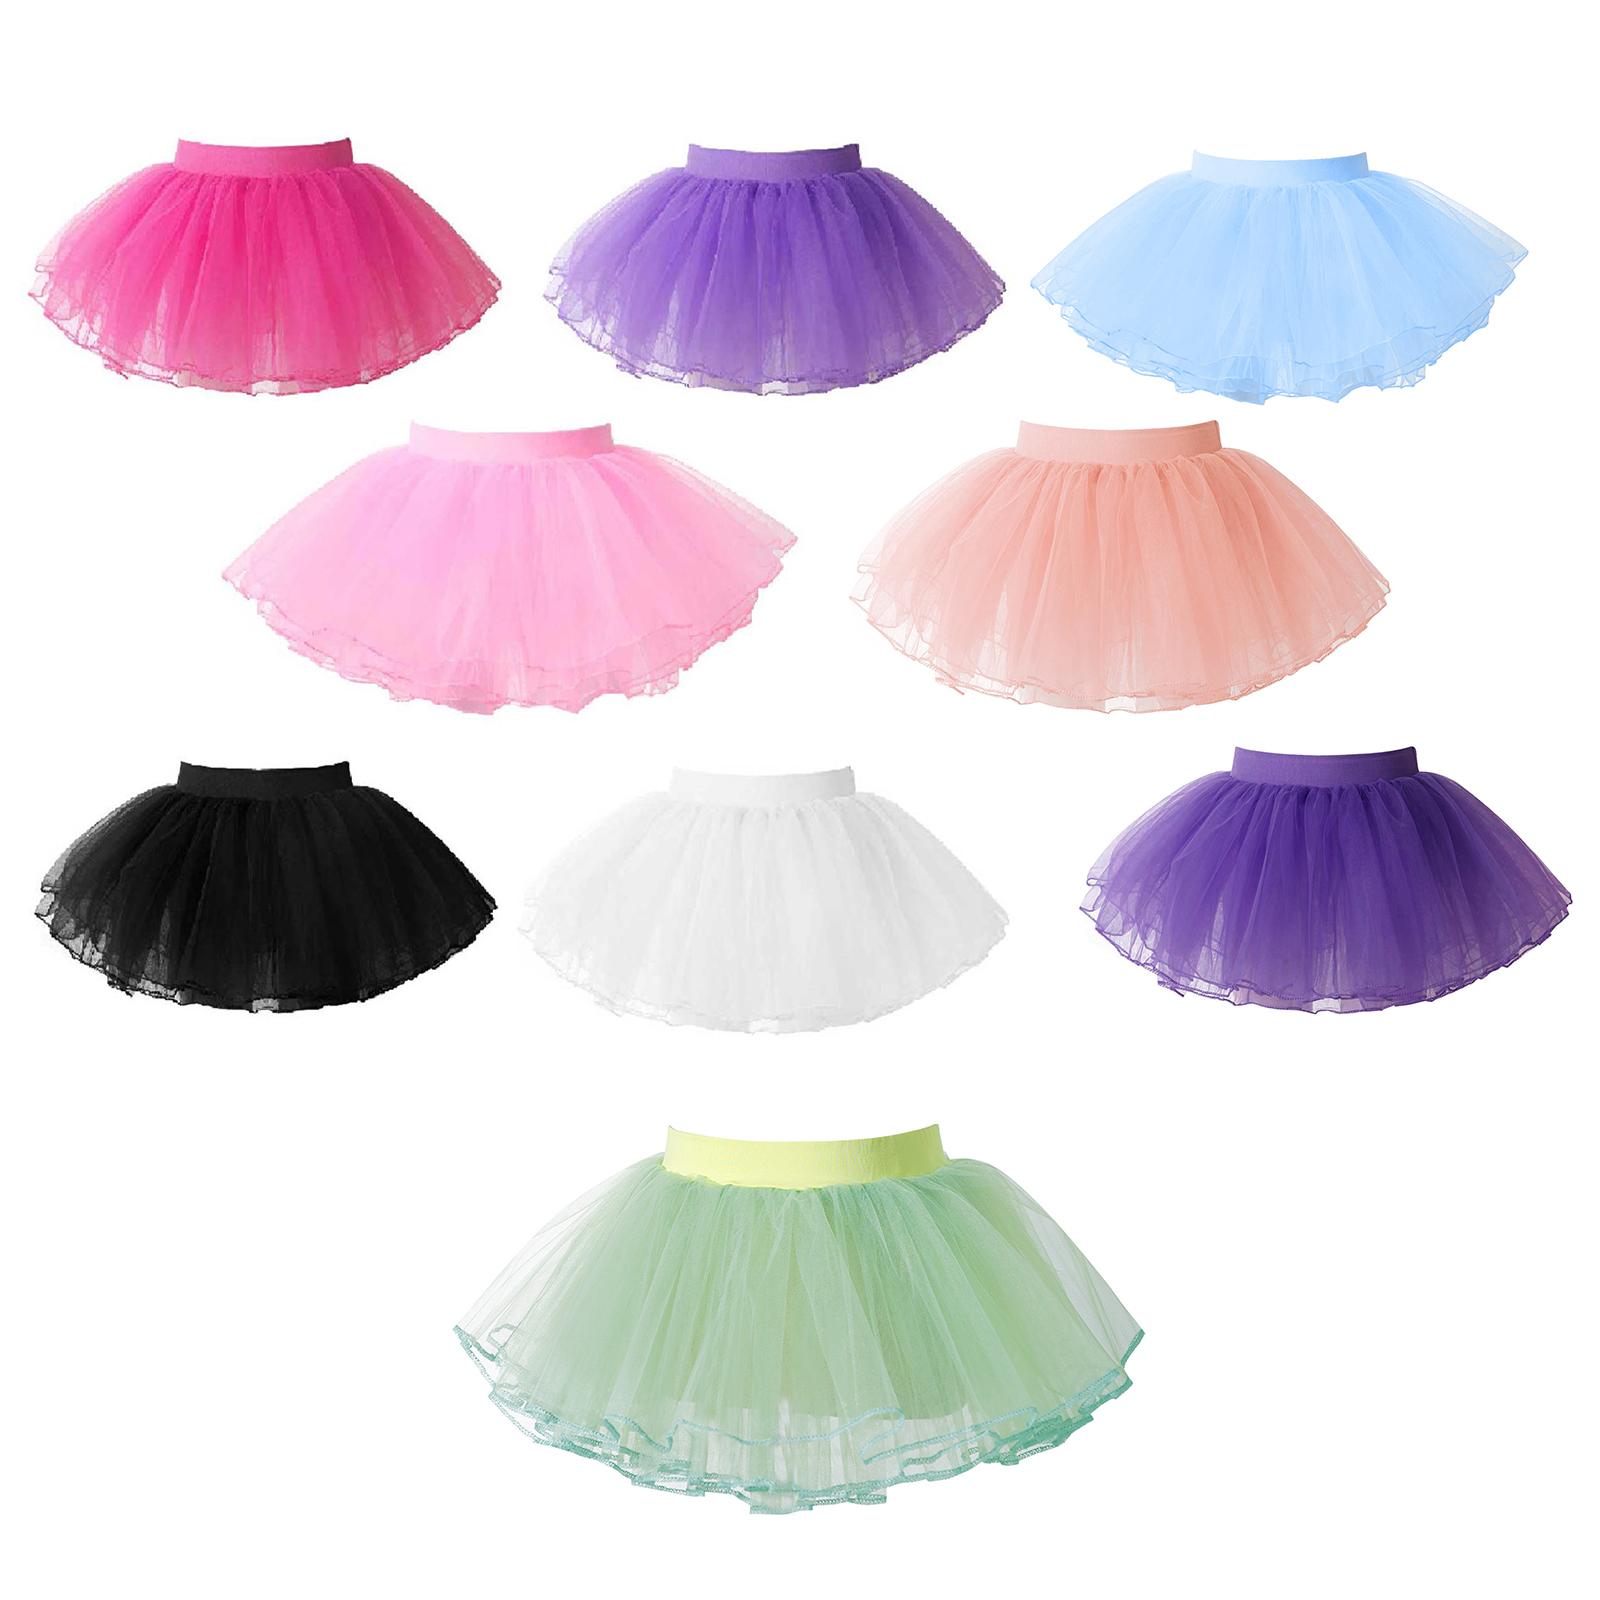 ZDHoor Kids Girls Ballet Dance Tutu Skirt Basic Classic Elastic Waist 4 Layers Mesh Tulle Skirt Ballet Training Wear